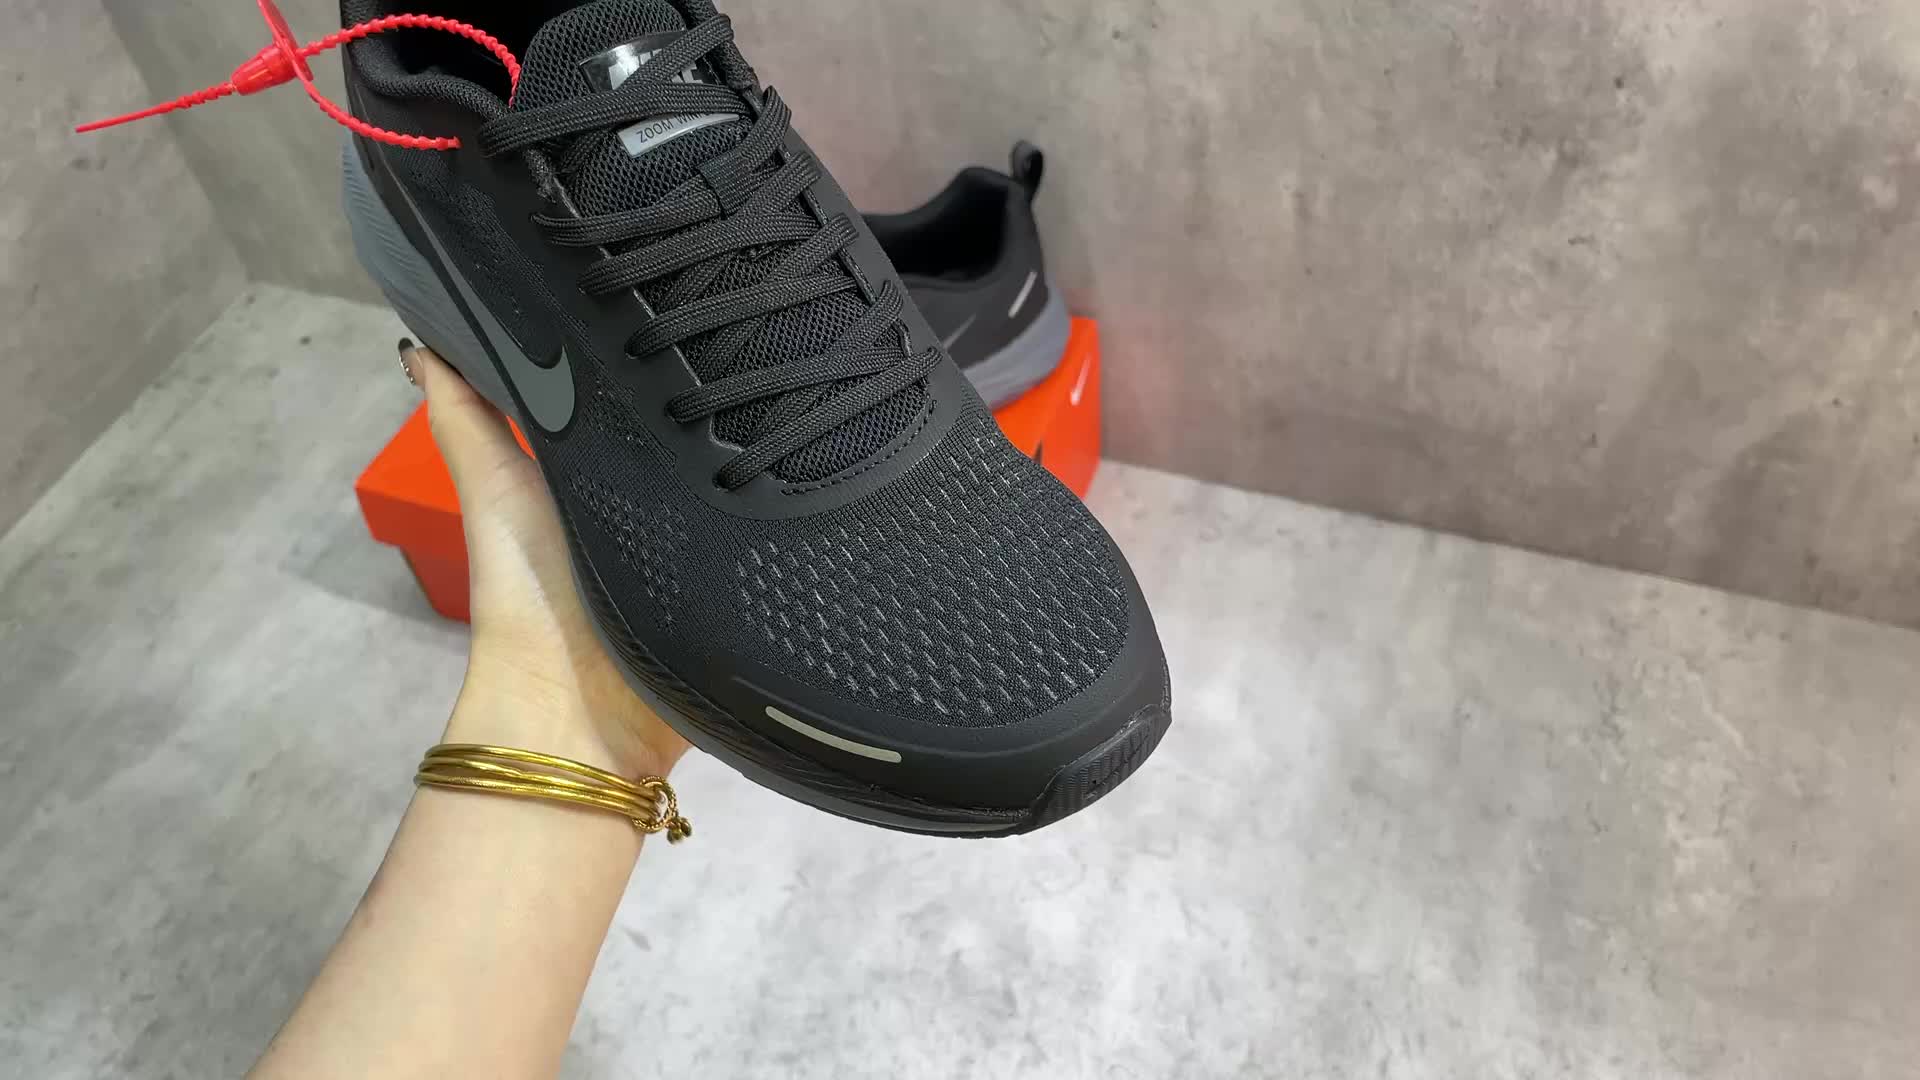 Men shoes-Nike, Code: XS6602,$: 79USD